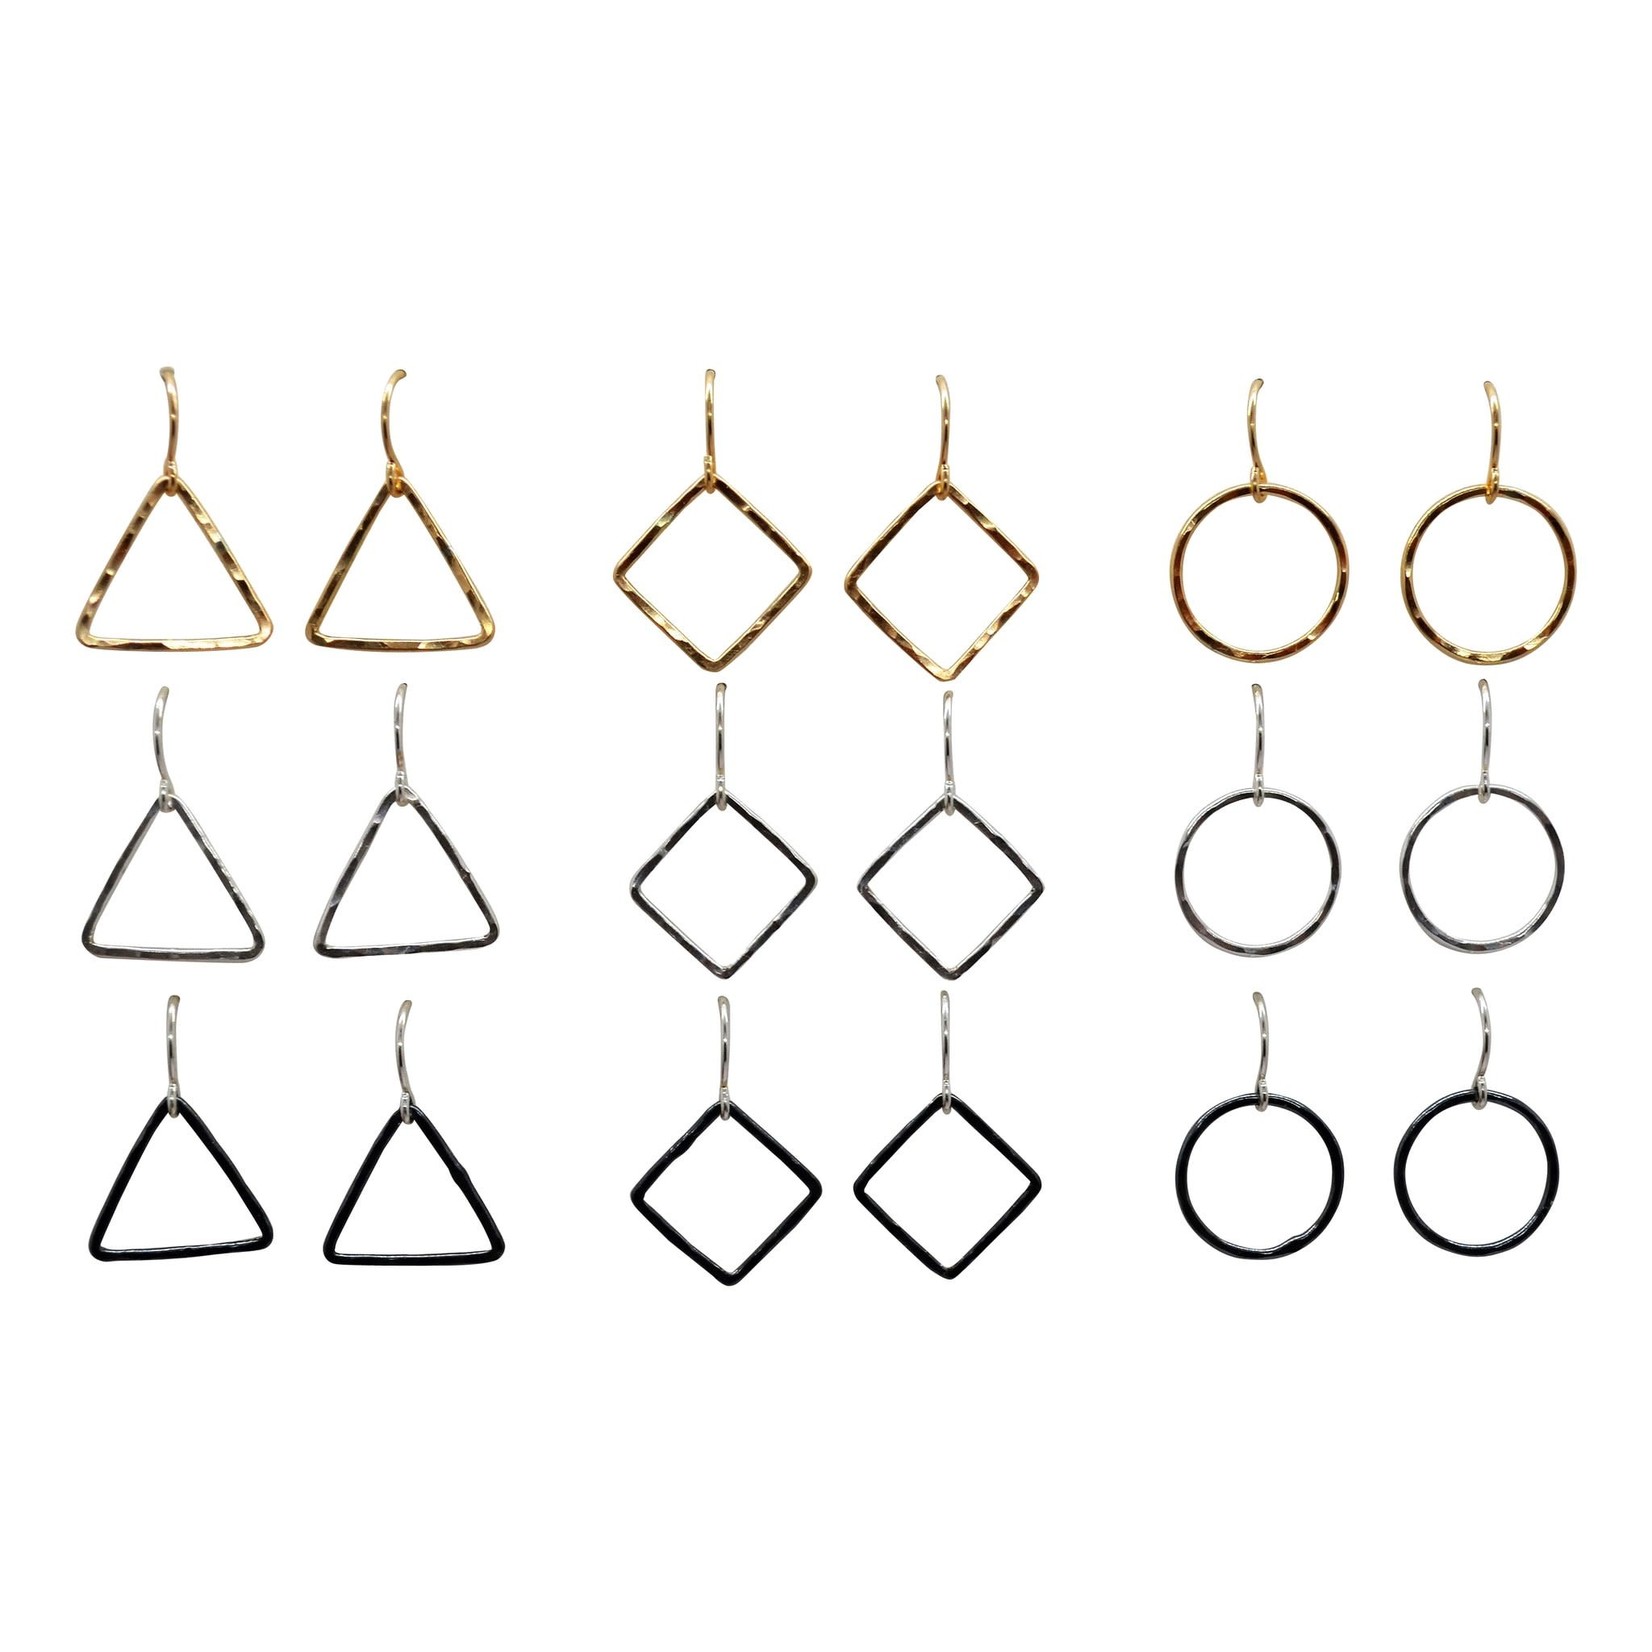 Tamacino "Alyssum" - small single shape earrings